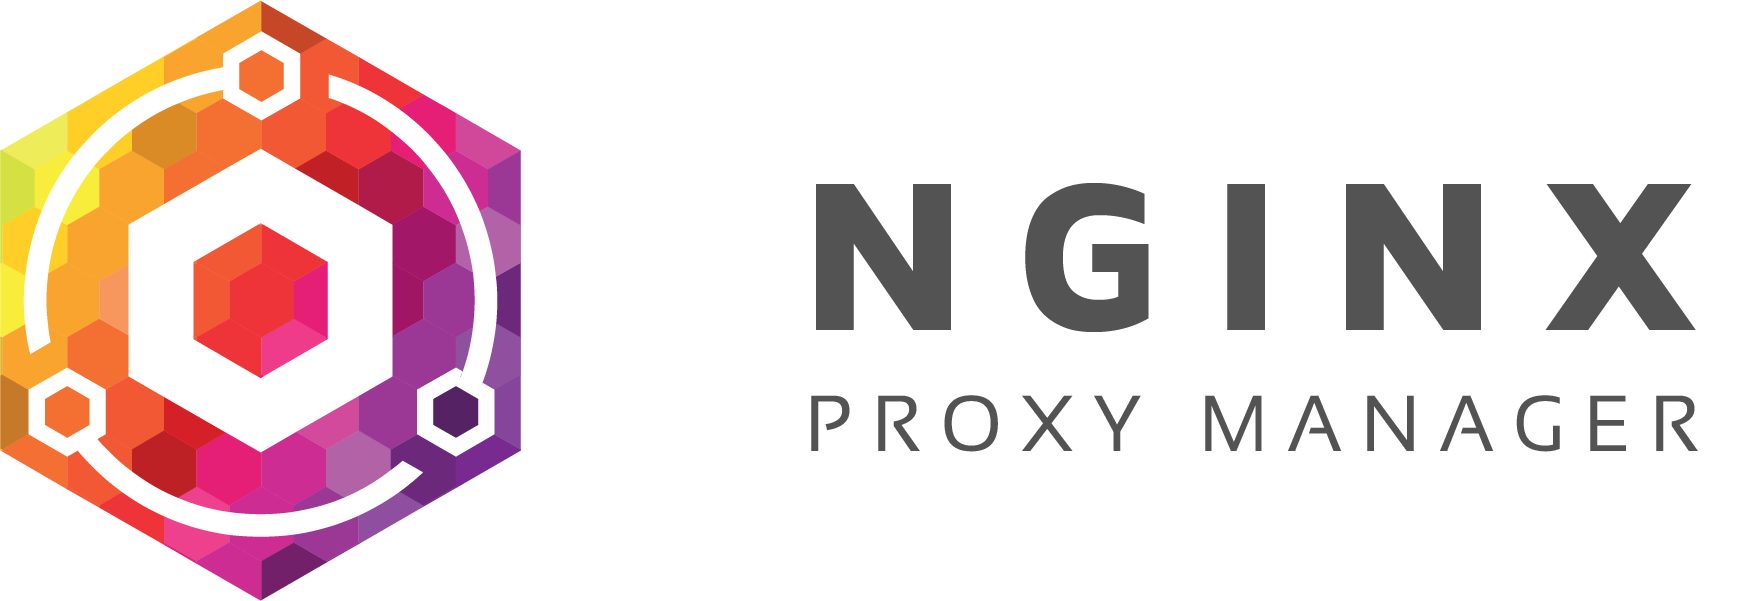 NGINX Proxy Manager Logo